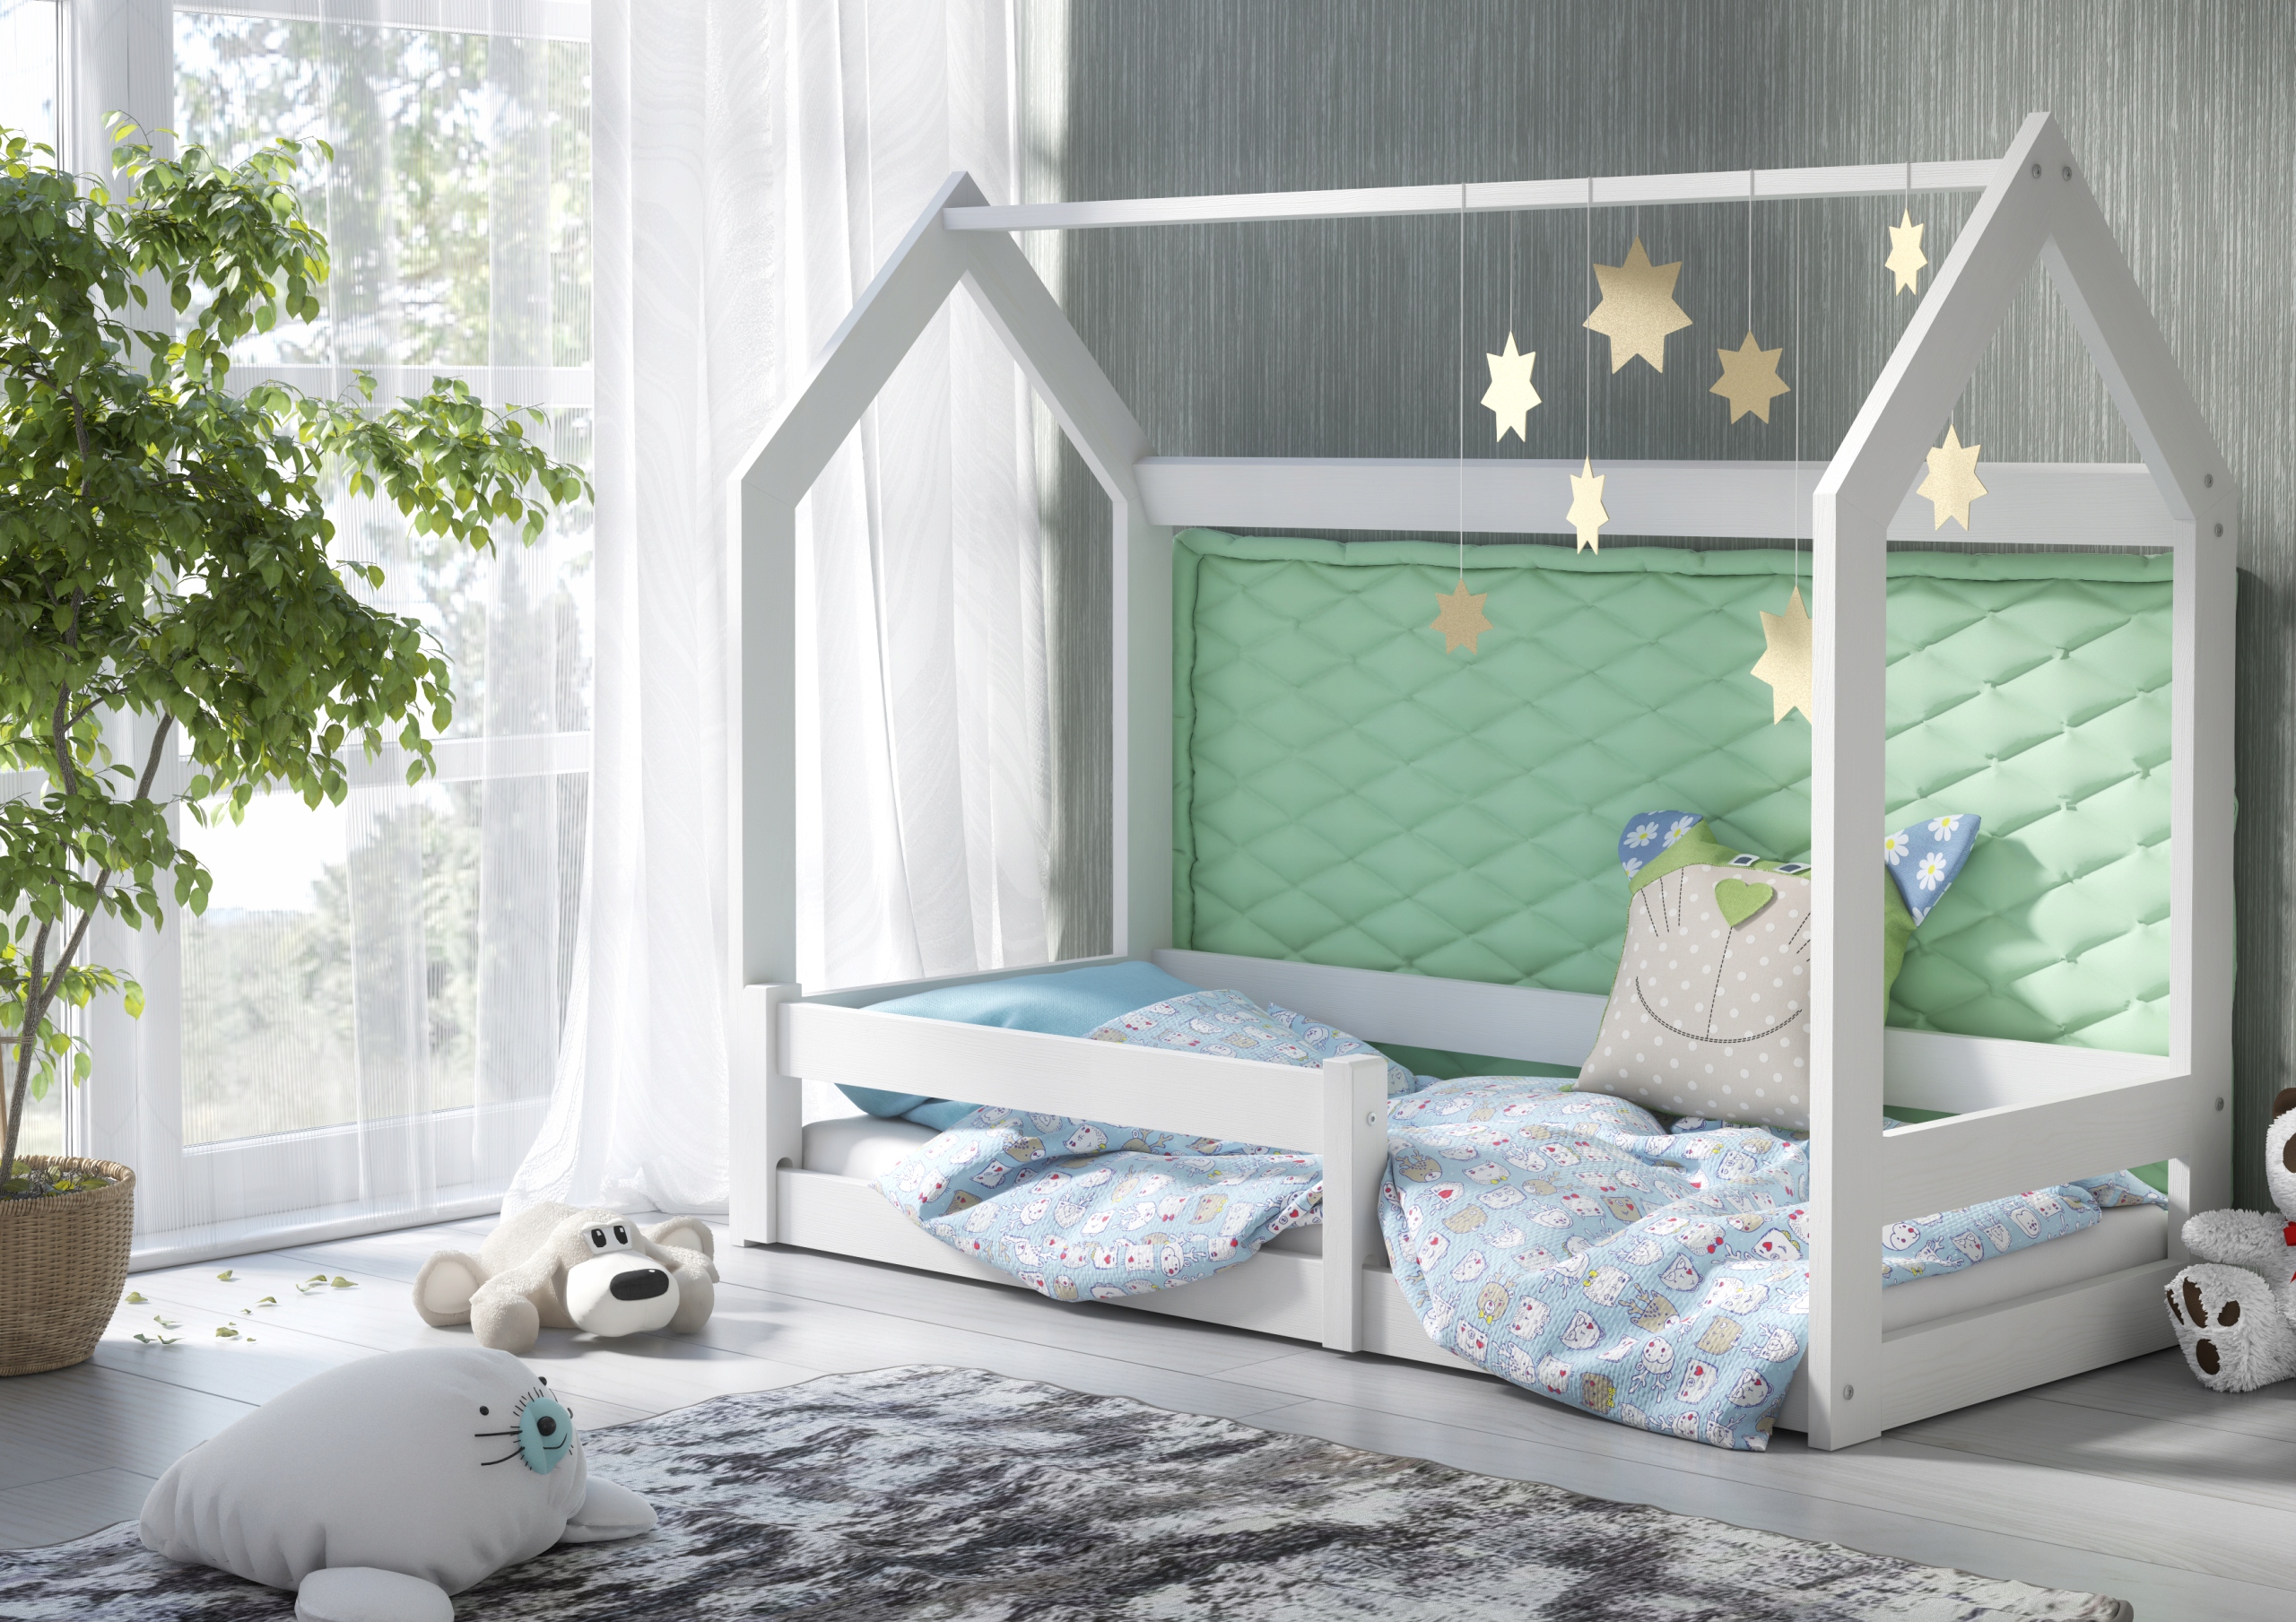 Как выбрать детскую кровать: основные советы по выбору кровати для ребенка